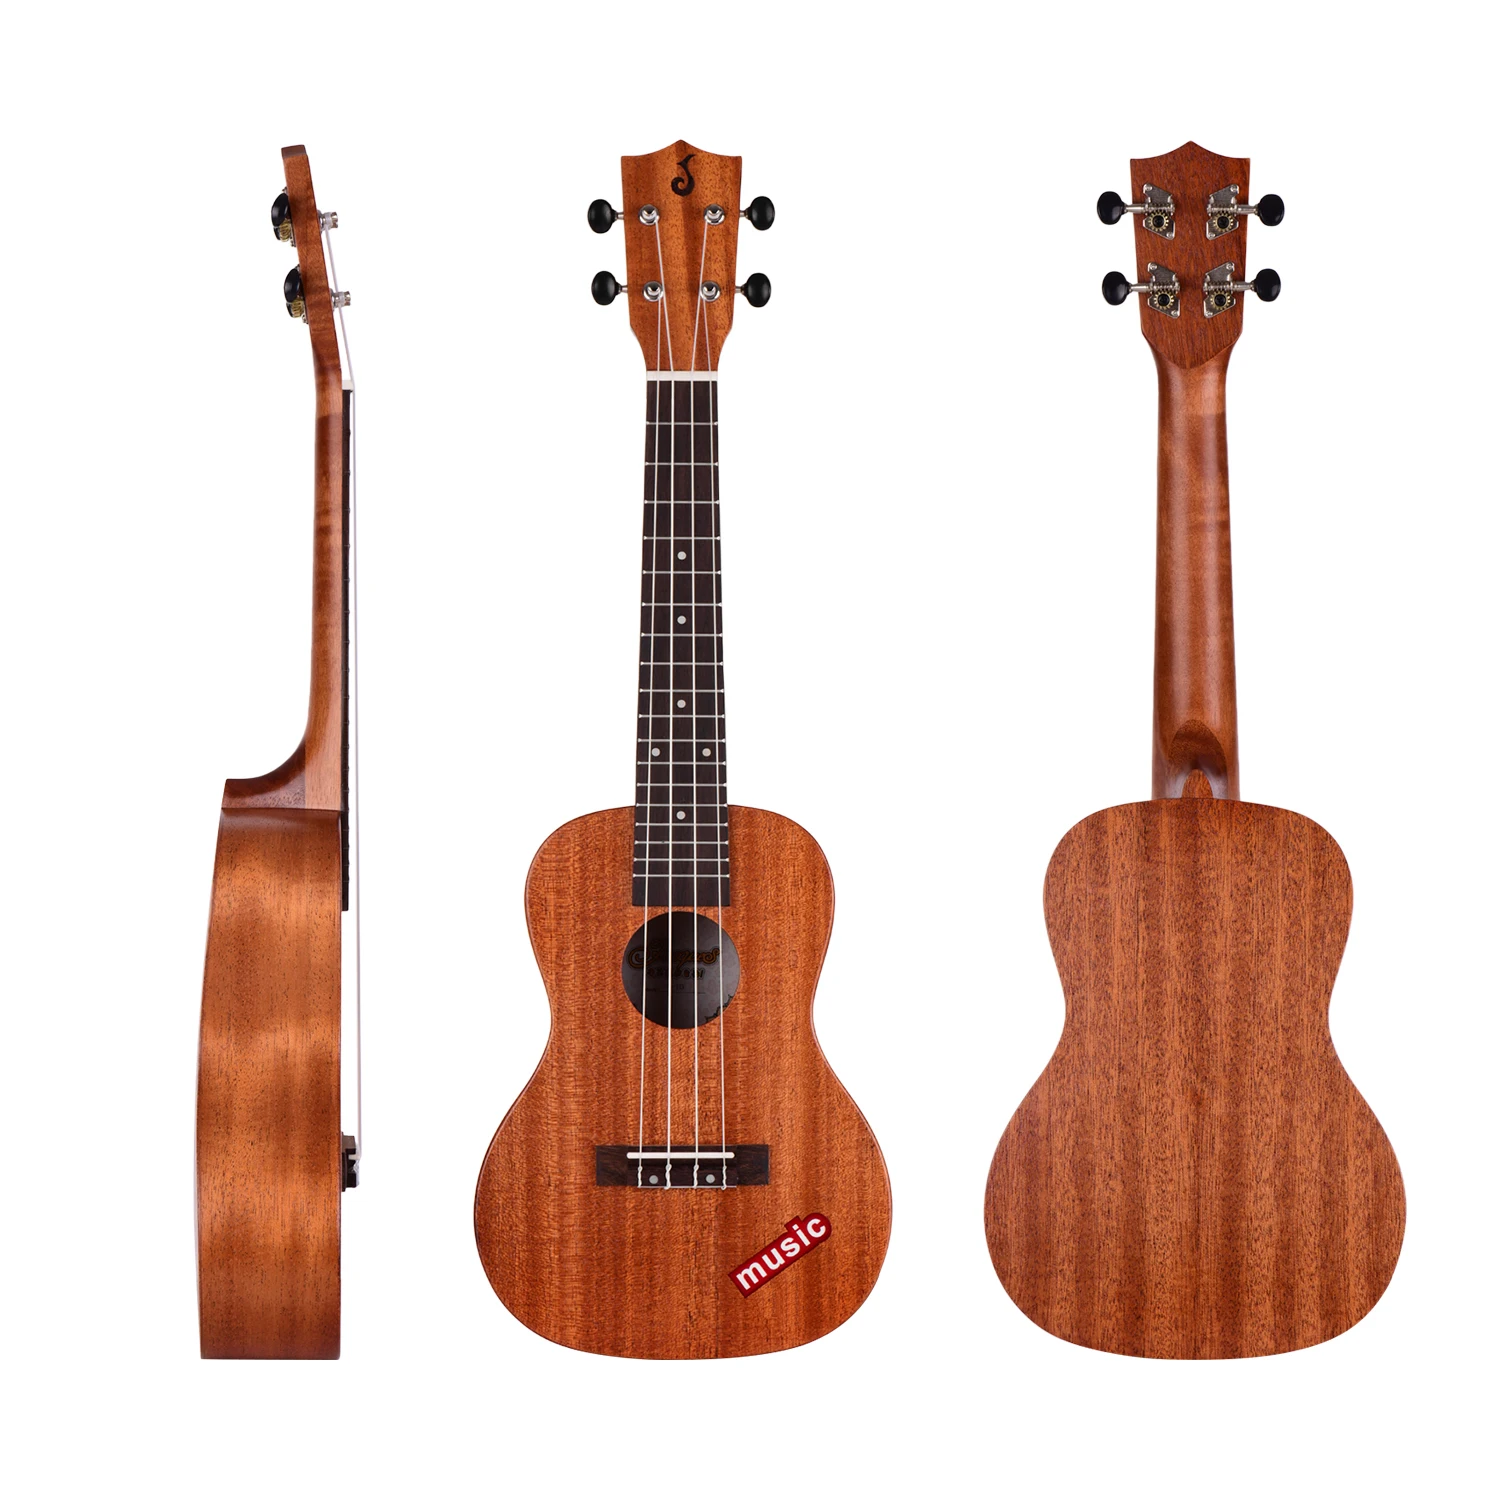 23 Tommer Concert Ukulele Mahogni Træ Hawaii-Guitar for Begyndere og Professionelle Spillere Ukulele Komplet Kit 4